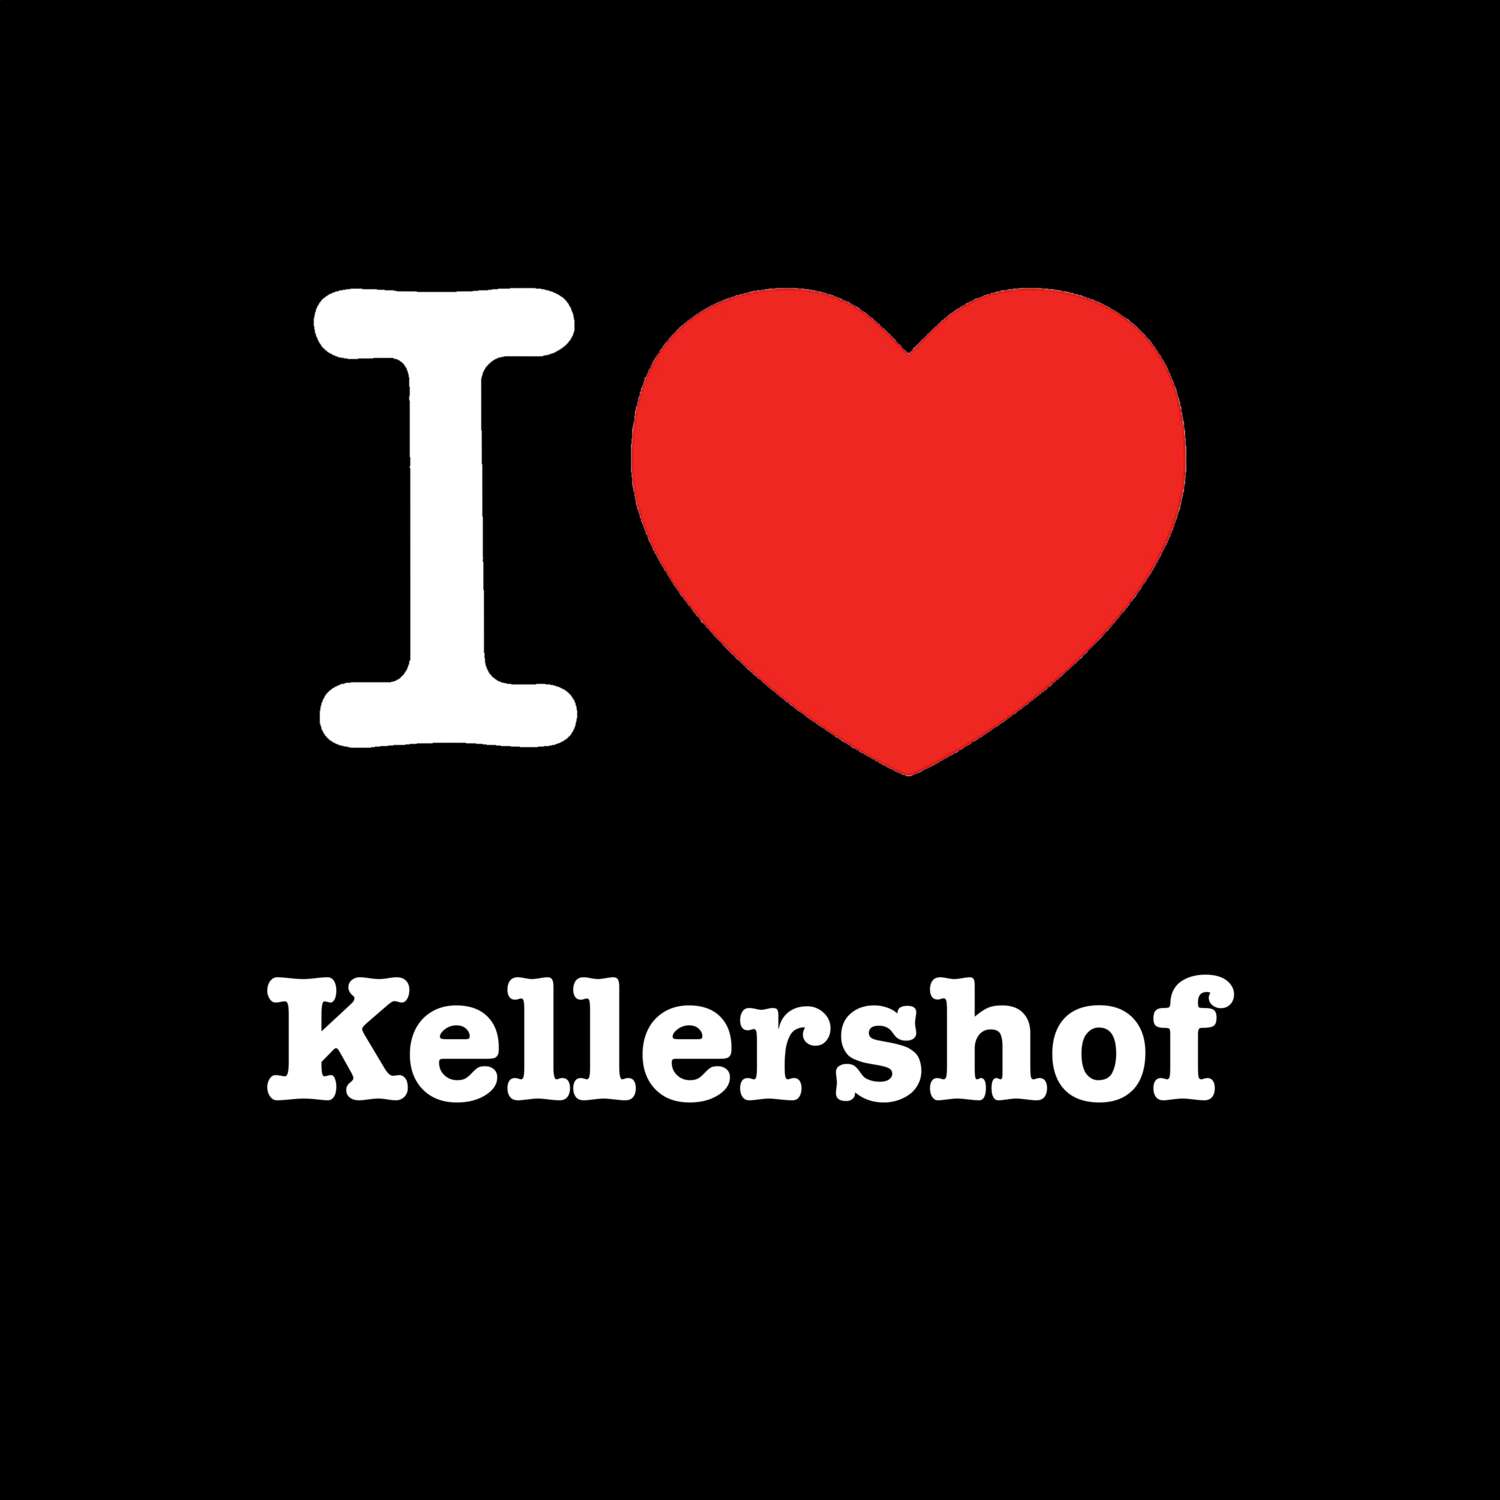 Kellershof T-Shirt »I love«